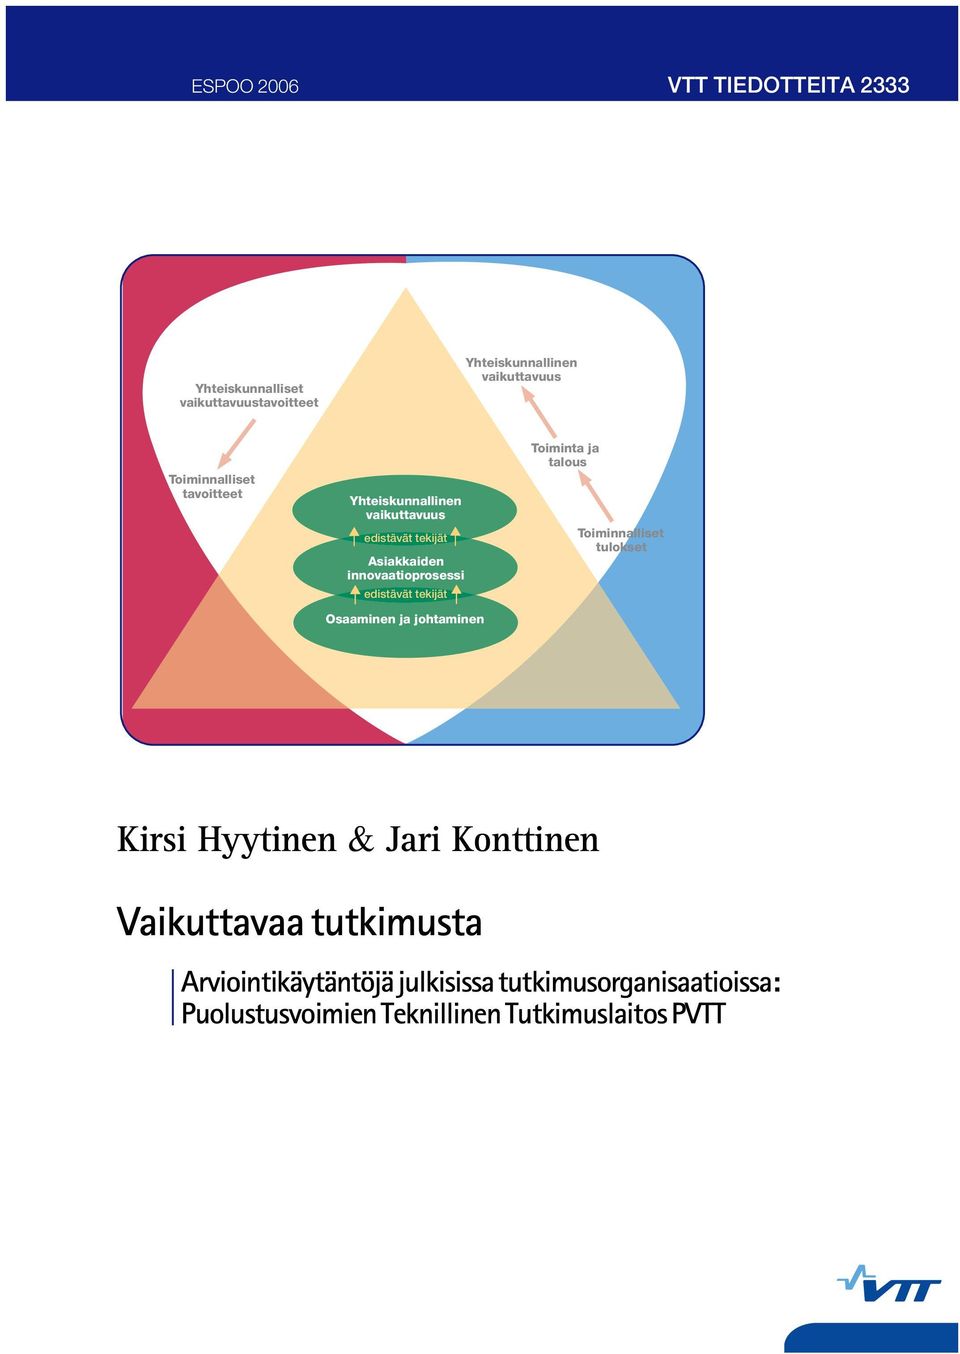 edistävät tekijät Osaaminen ja johtaminen Toiminta ja talous Toiminnalliset tulokset Kirsi Hyytinen & Jari